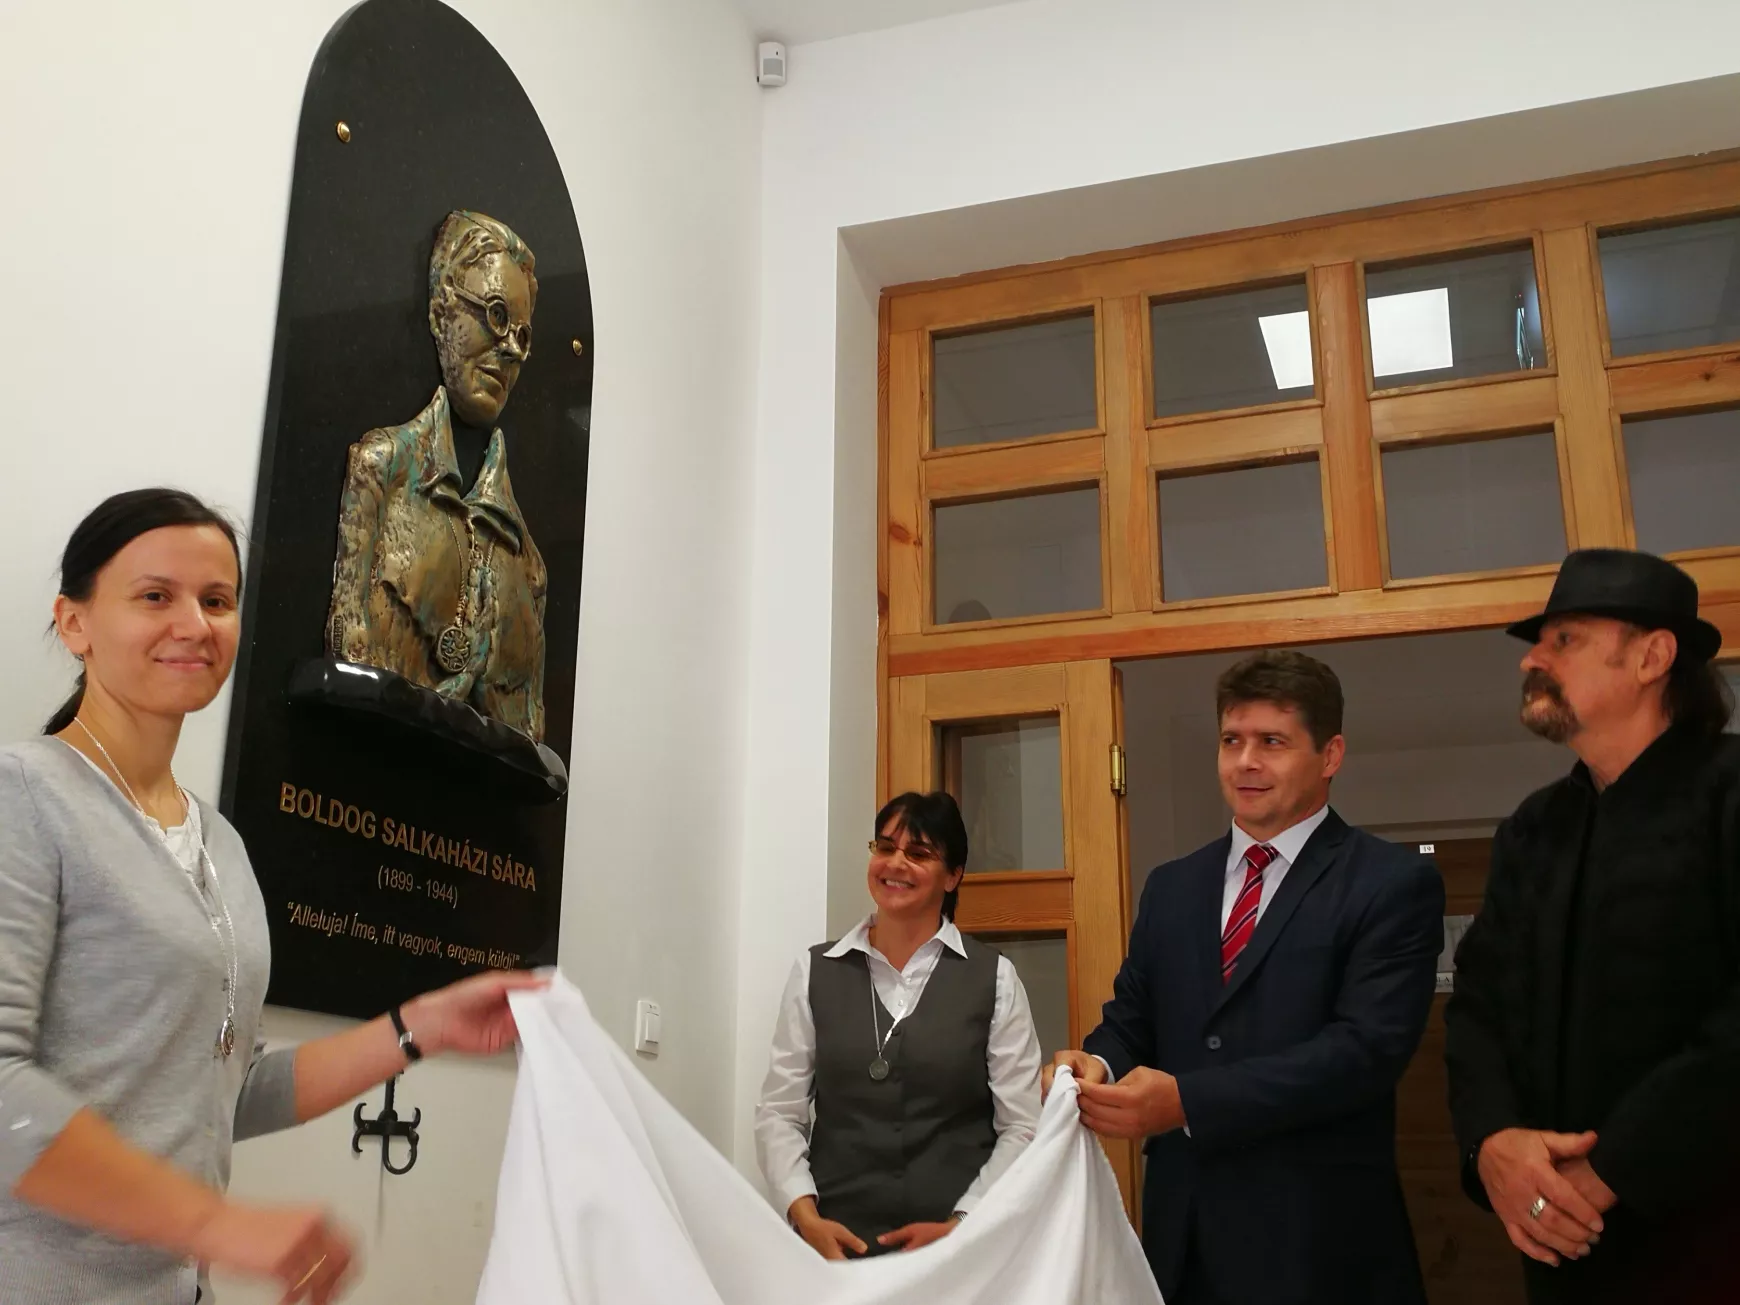 Boldog Salkaházi Sára-emléktáblával és kápolnával gazdagodott a Marianum Egyházi Iskolaközpont